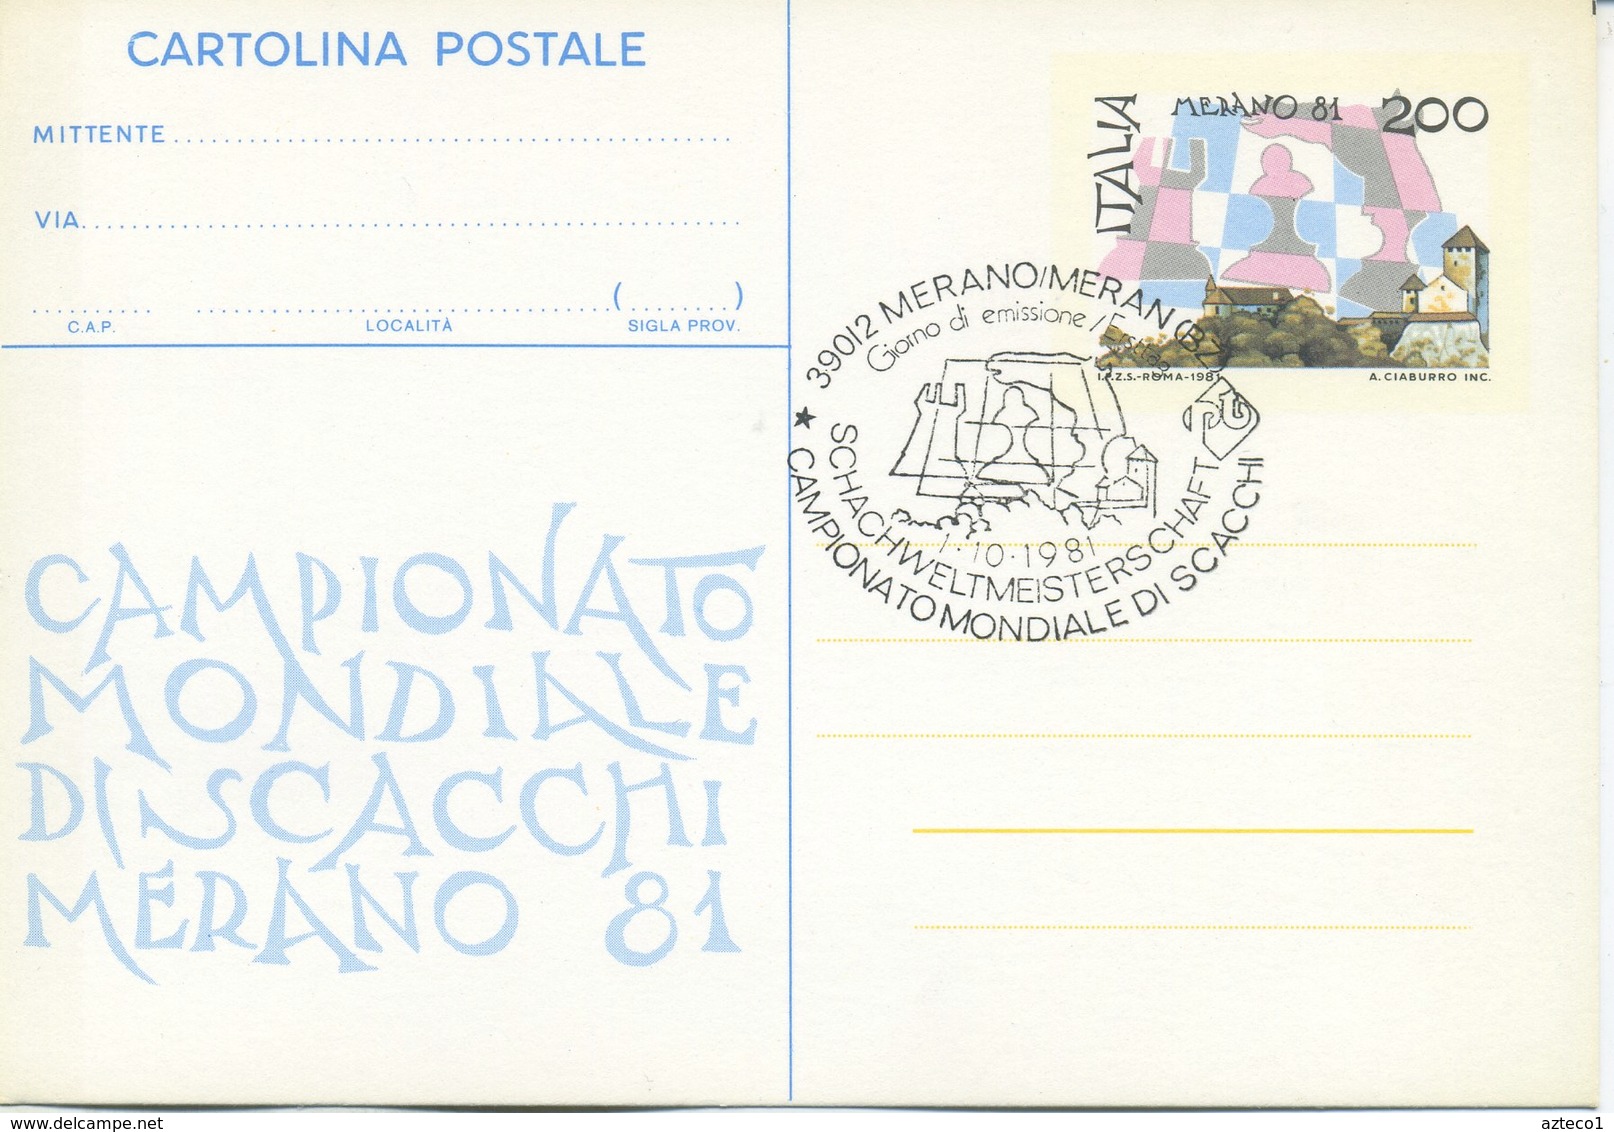 ITALIA - INTERO POSTALE 1981 - MONDIALI DI SCACCHI A MERANO - FDC - Interi Postali